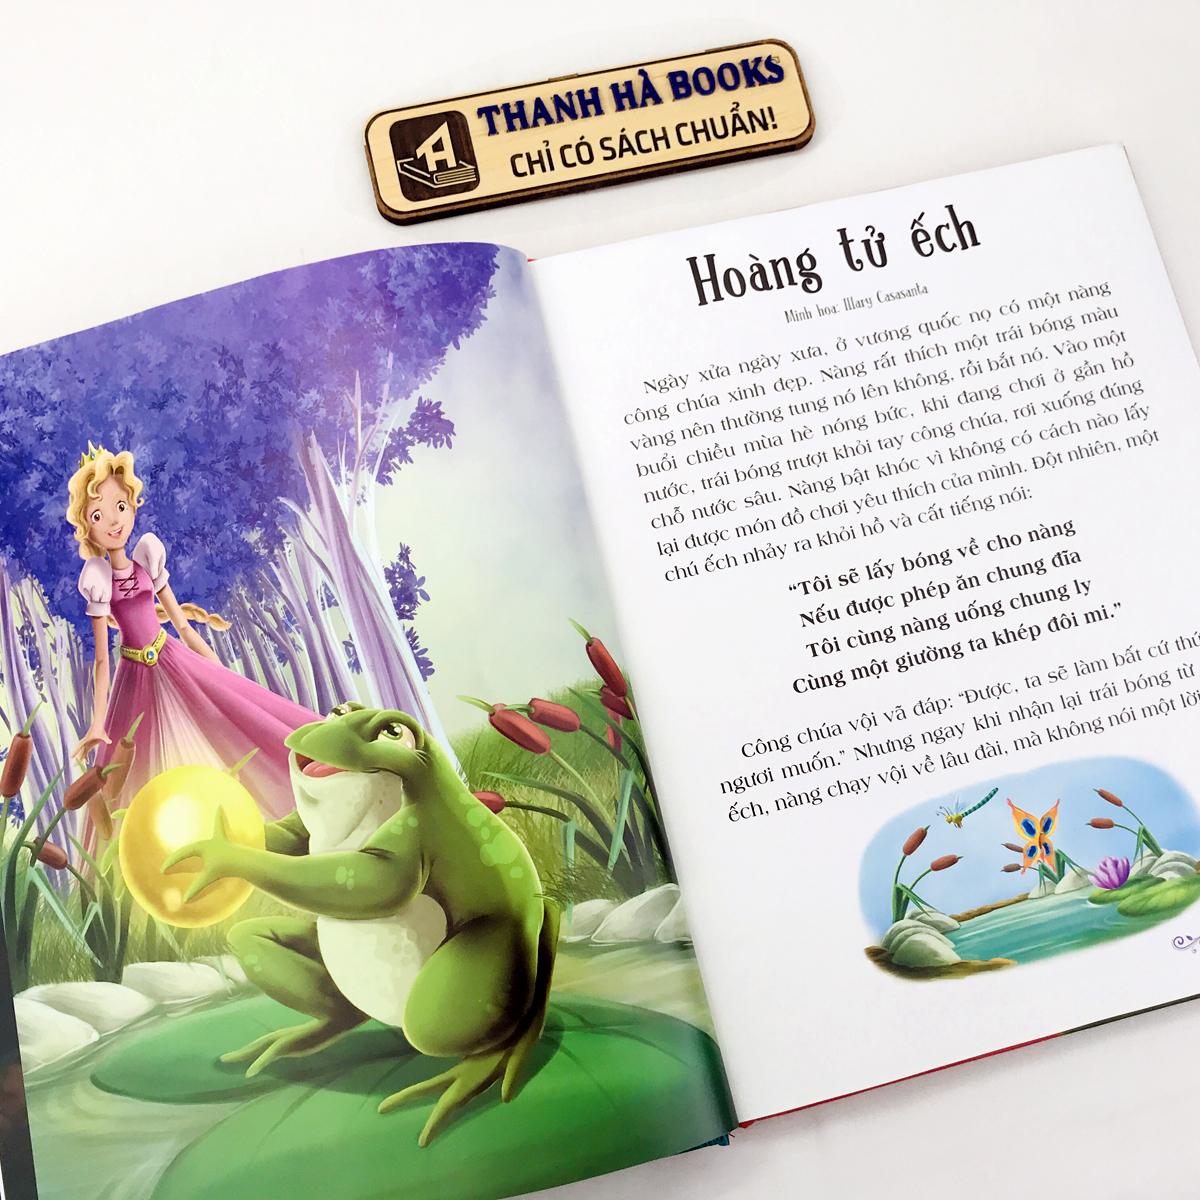 Sách Truyện Cổ Grimm - Truyện dành cho trẻ từ 3 tuổi (bìa cứng)